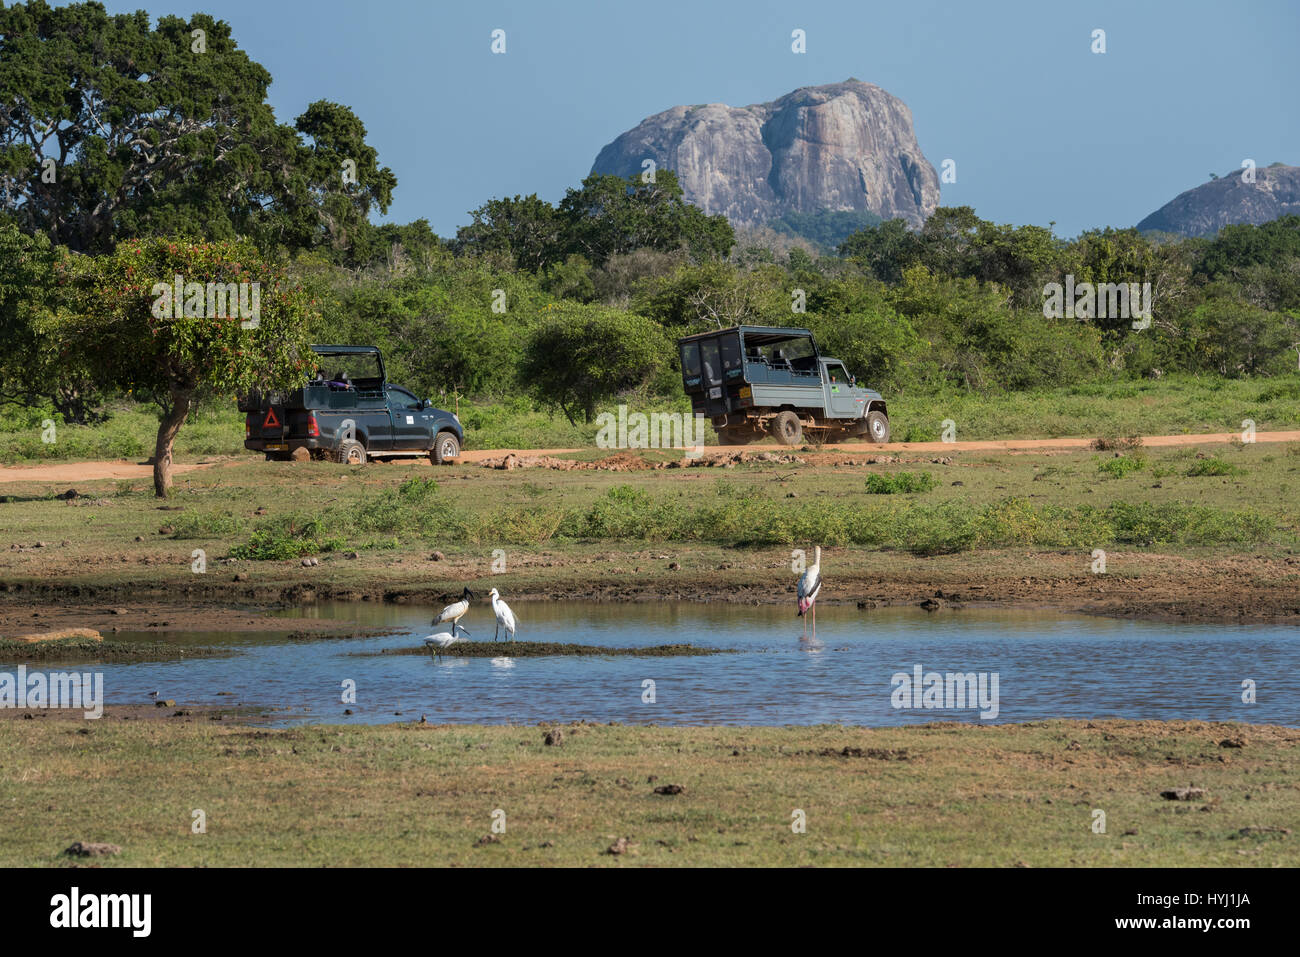 Sri Lanka, Yala-Nationalpark 1900 aka Ruhuna National Park (Block 1) gegründet. Malerische Aussicht auf Wahrzeichen Elephant Rock, Pirschfahrt Jeep unterwegs, Storch Stockfoto